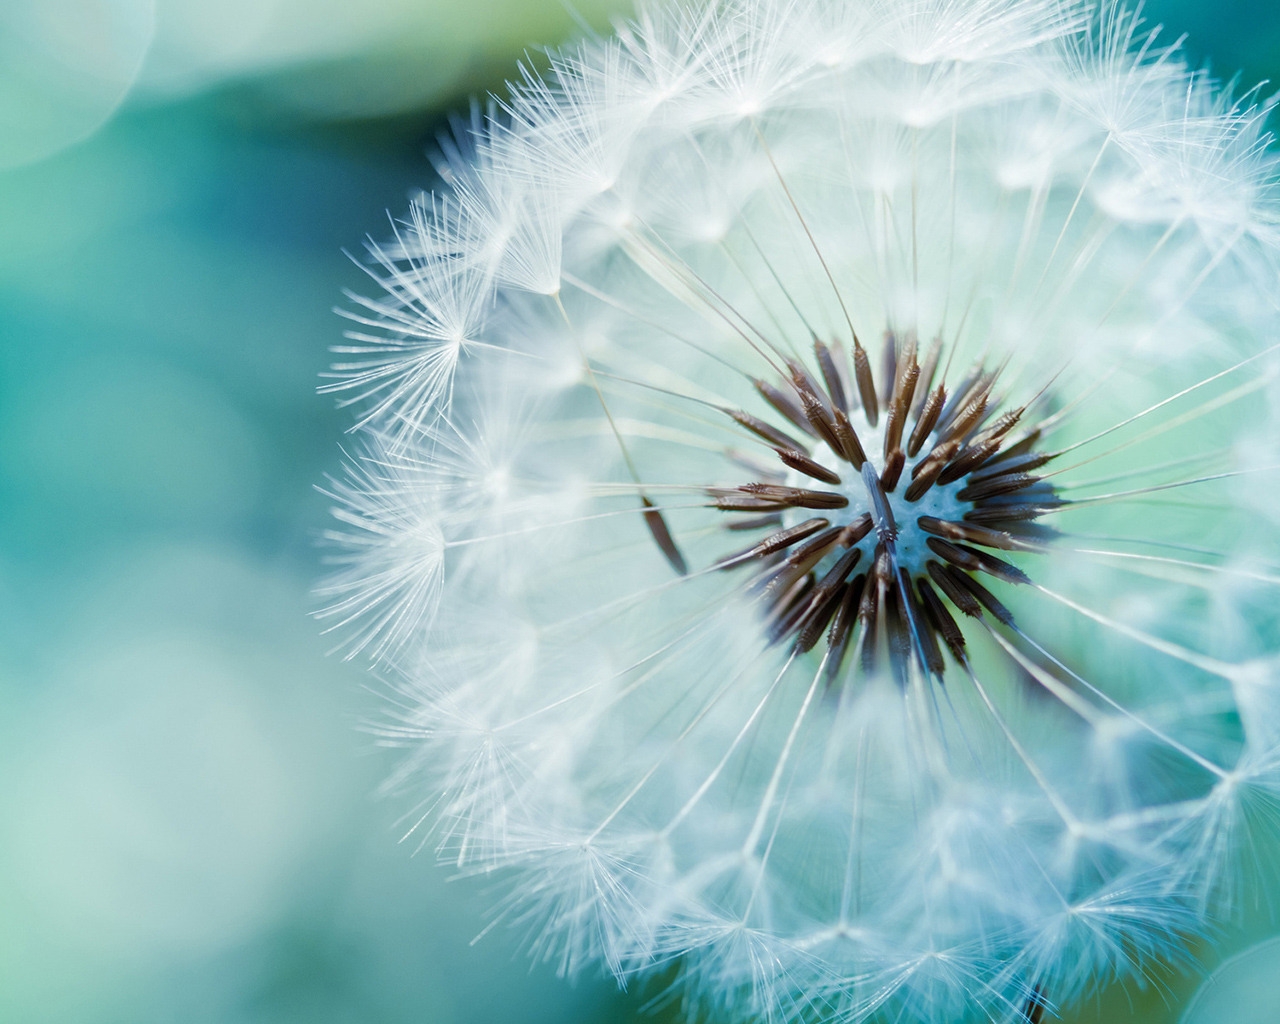 Dandelion Flower for 1280 x 1024 resolution